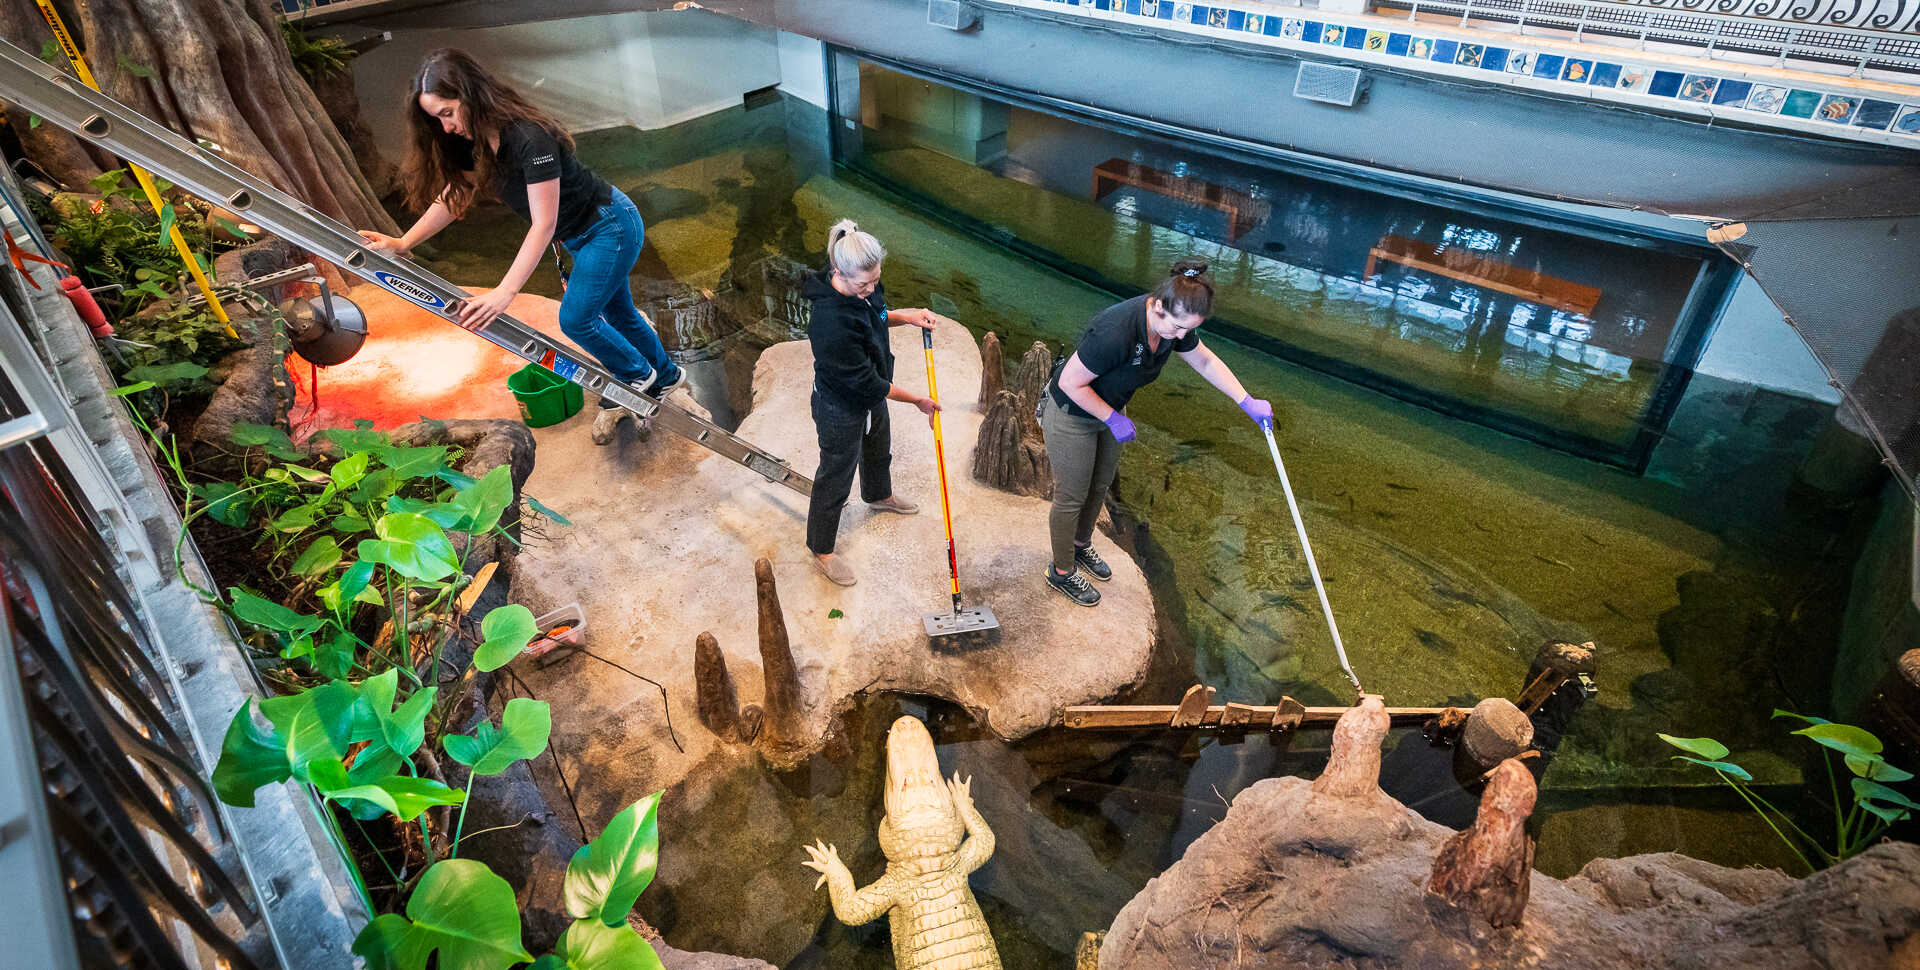 Aquarium biologists in the Swamp habitat prepare to feed Claude the alligator